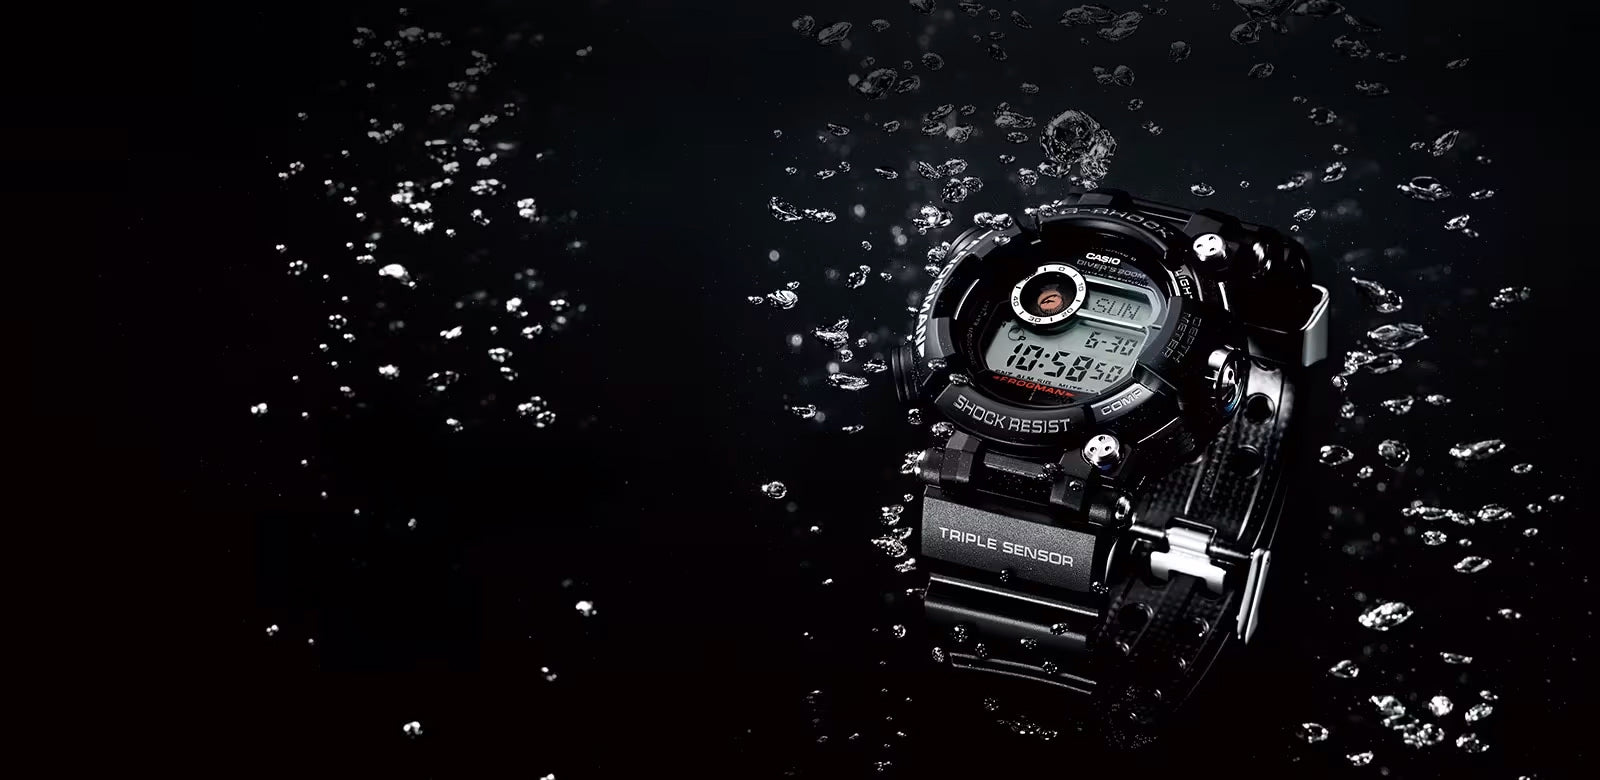 Waterproof g-shock watch